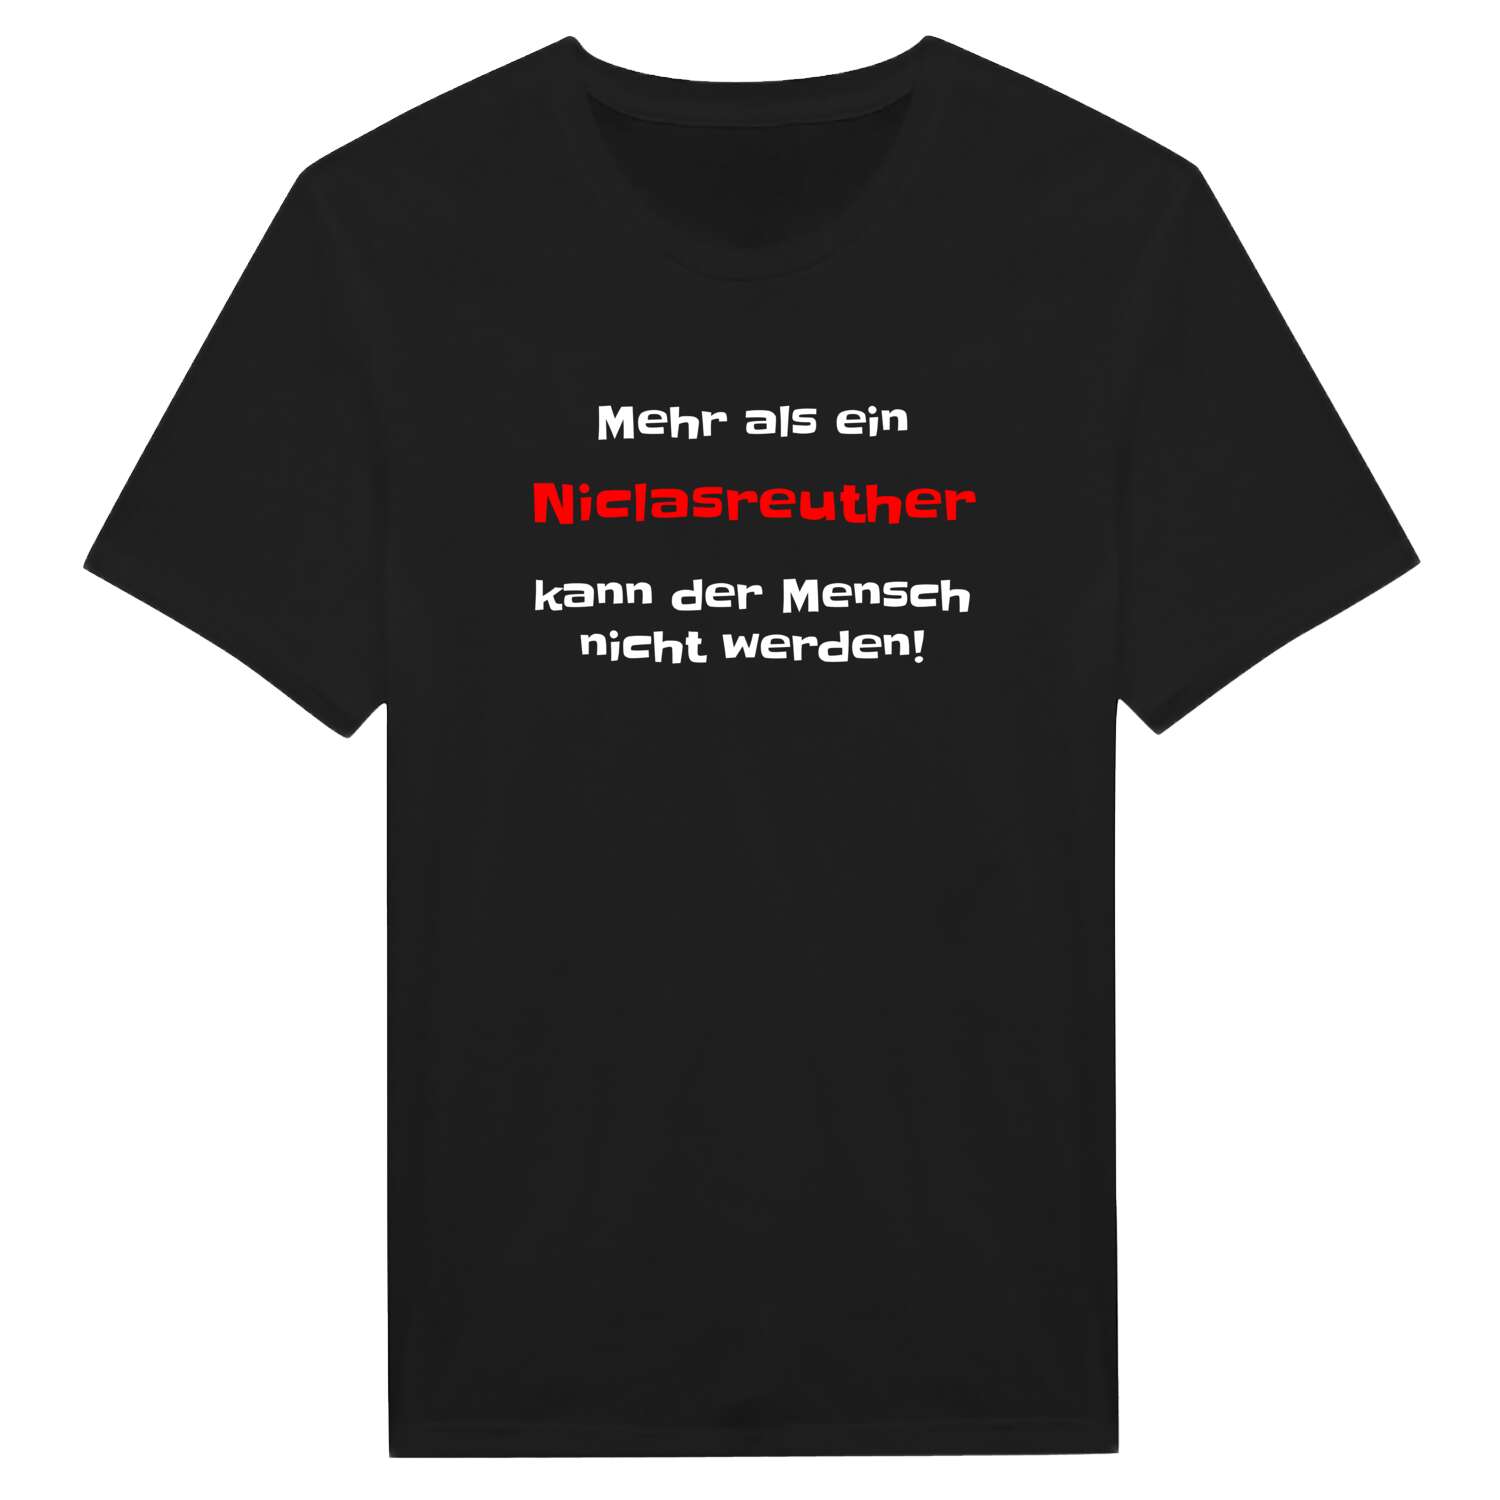 Niclasreuth T-Shirt »Mehr als ein«